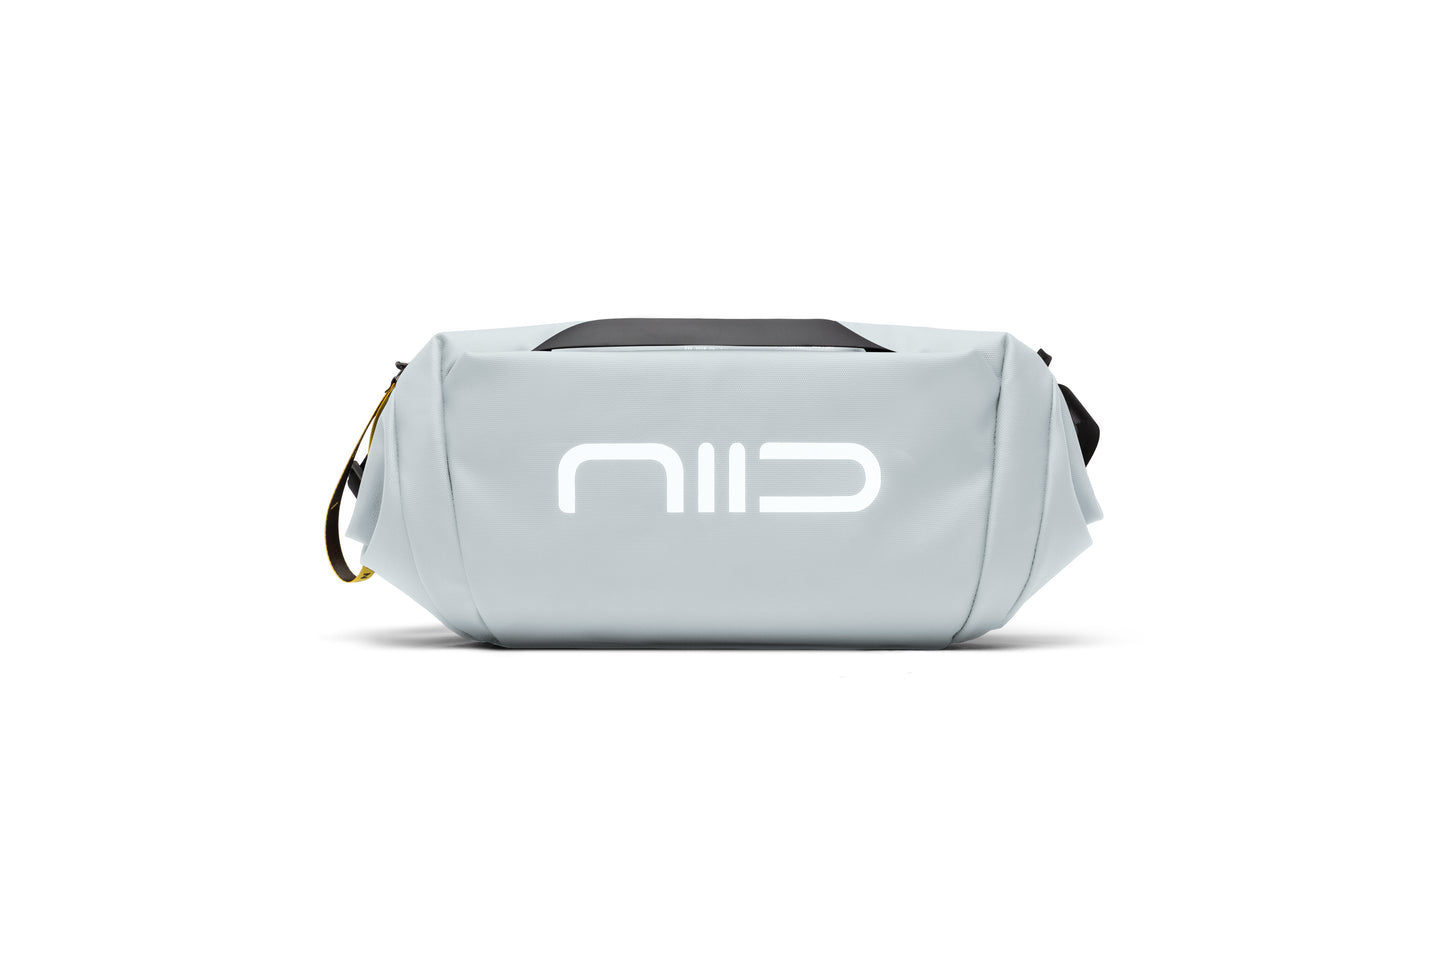 NIID S6 Hybrid Sling